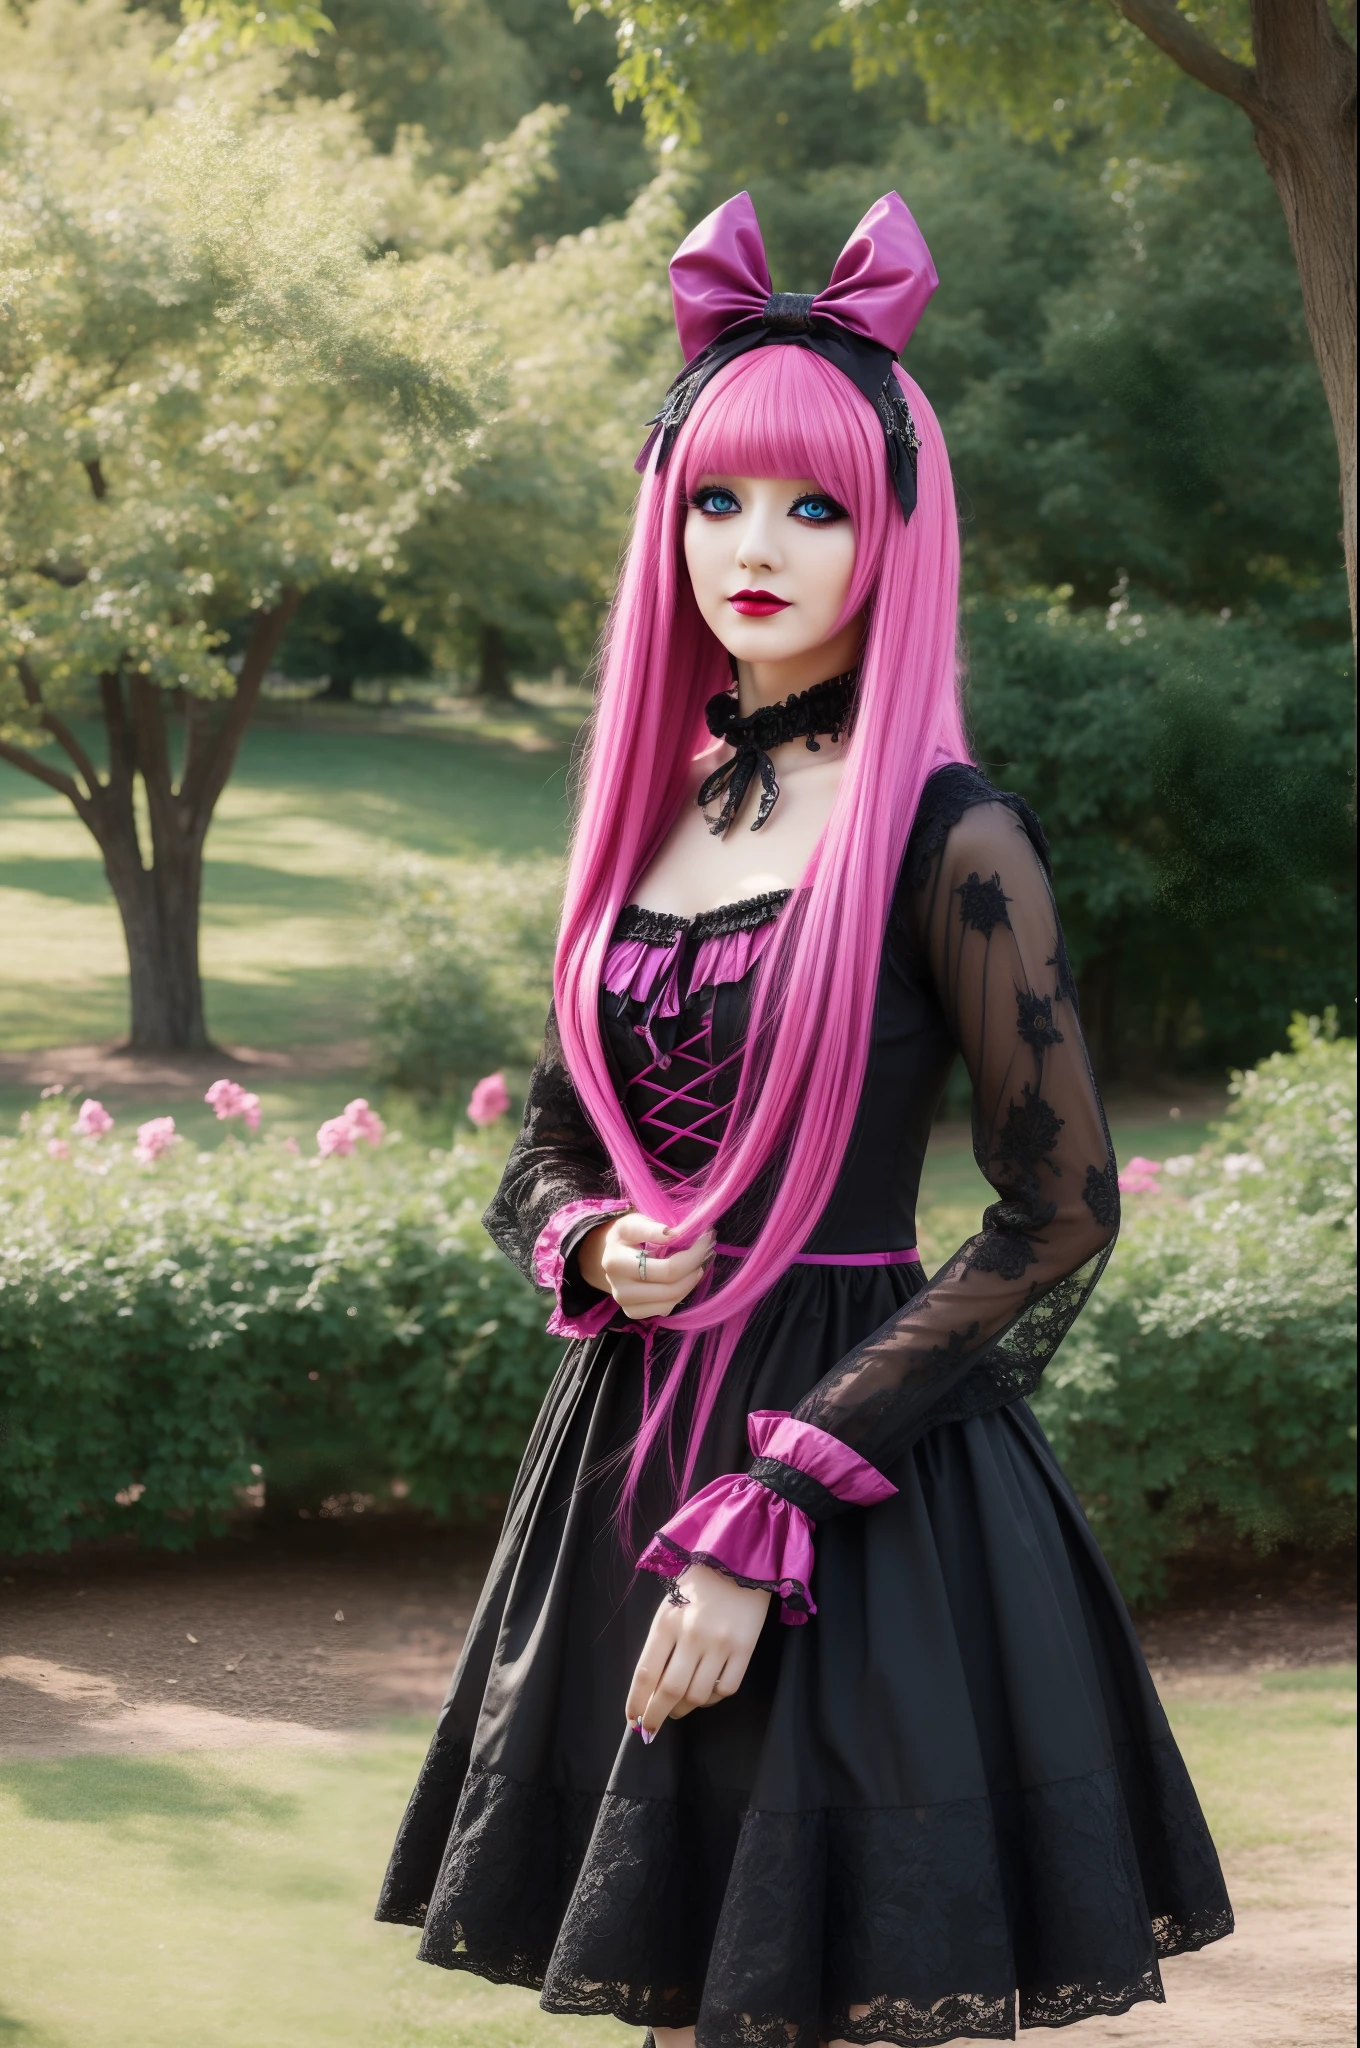 In einem wunderschönen Park eine modisch aussehende Frau. Sie trägt einen sehr farbenfrohen und auffälligen Gothic-Kawaii-Stil, mit aufwendigem Make-up und bunter Perücke.